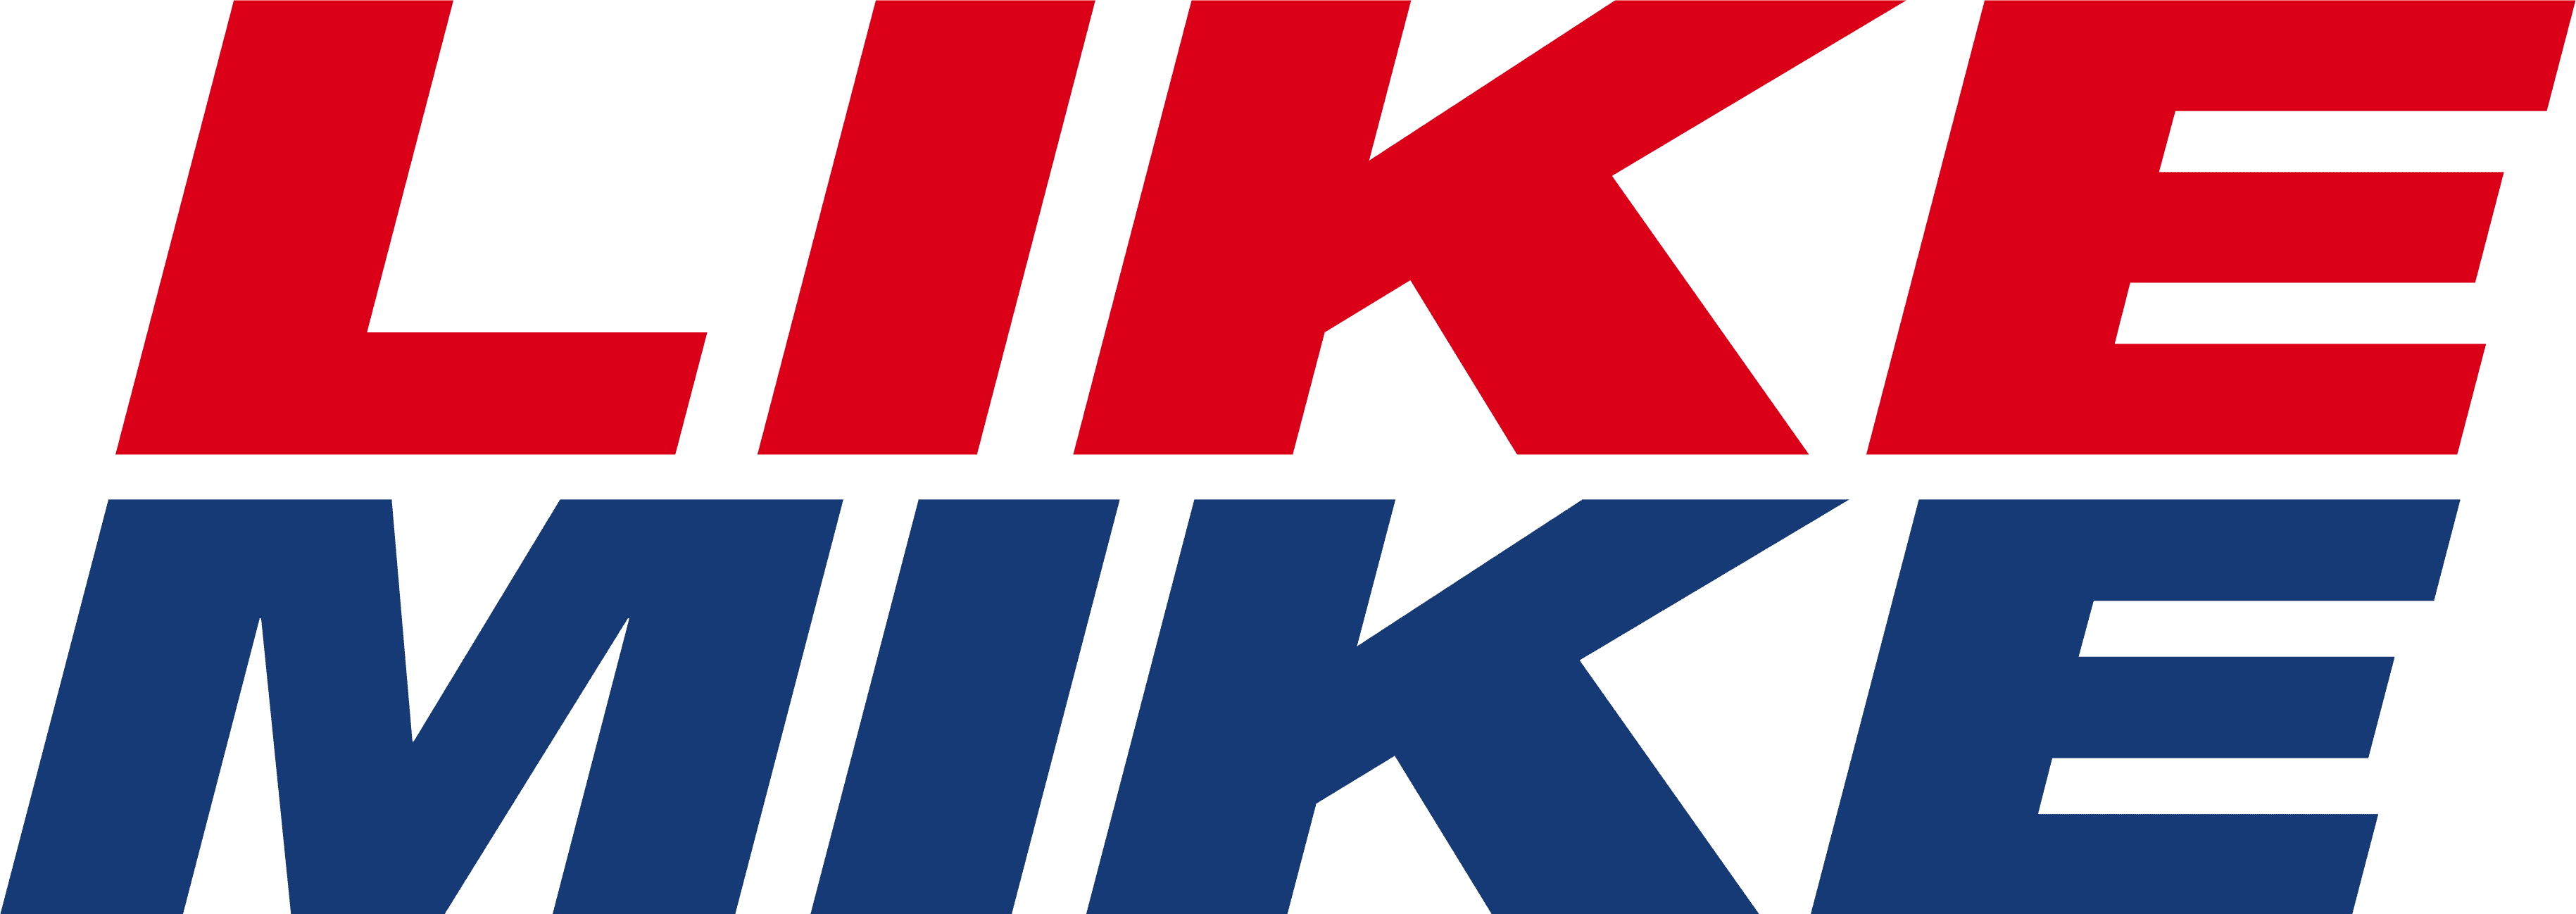 Like Mike logo